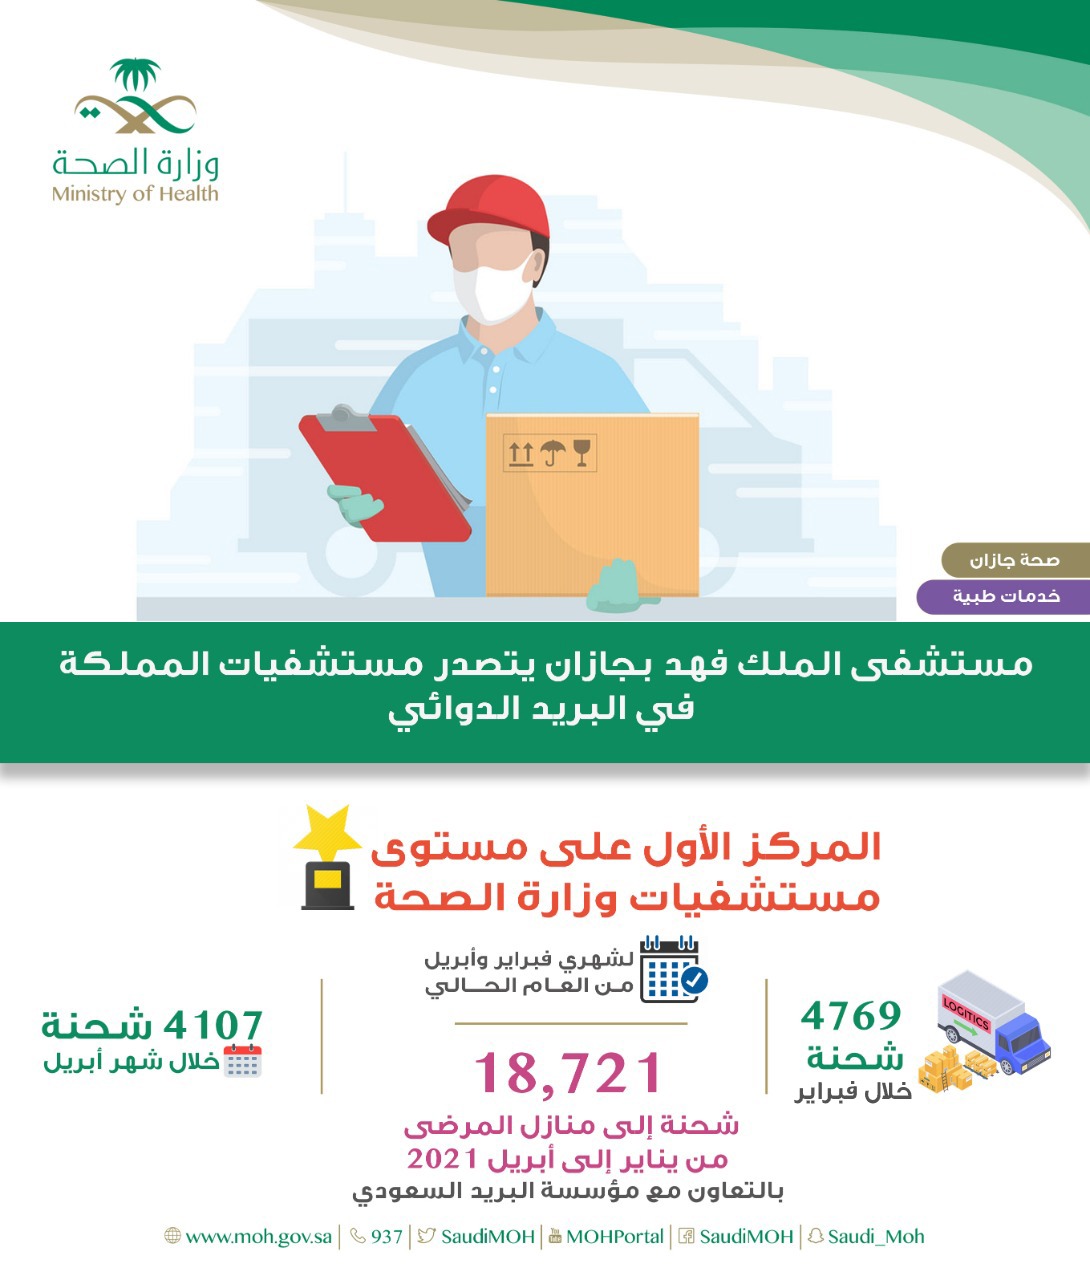 “مستشفى الملك فهد بجازان يتصدر مستشفيات المملكة في خدمة البريد الدوائي